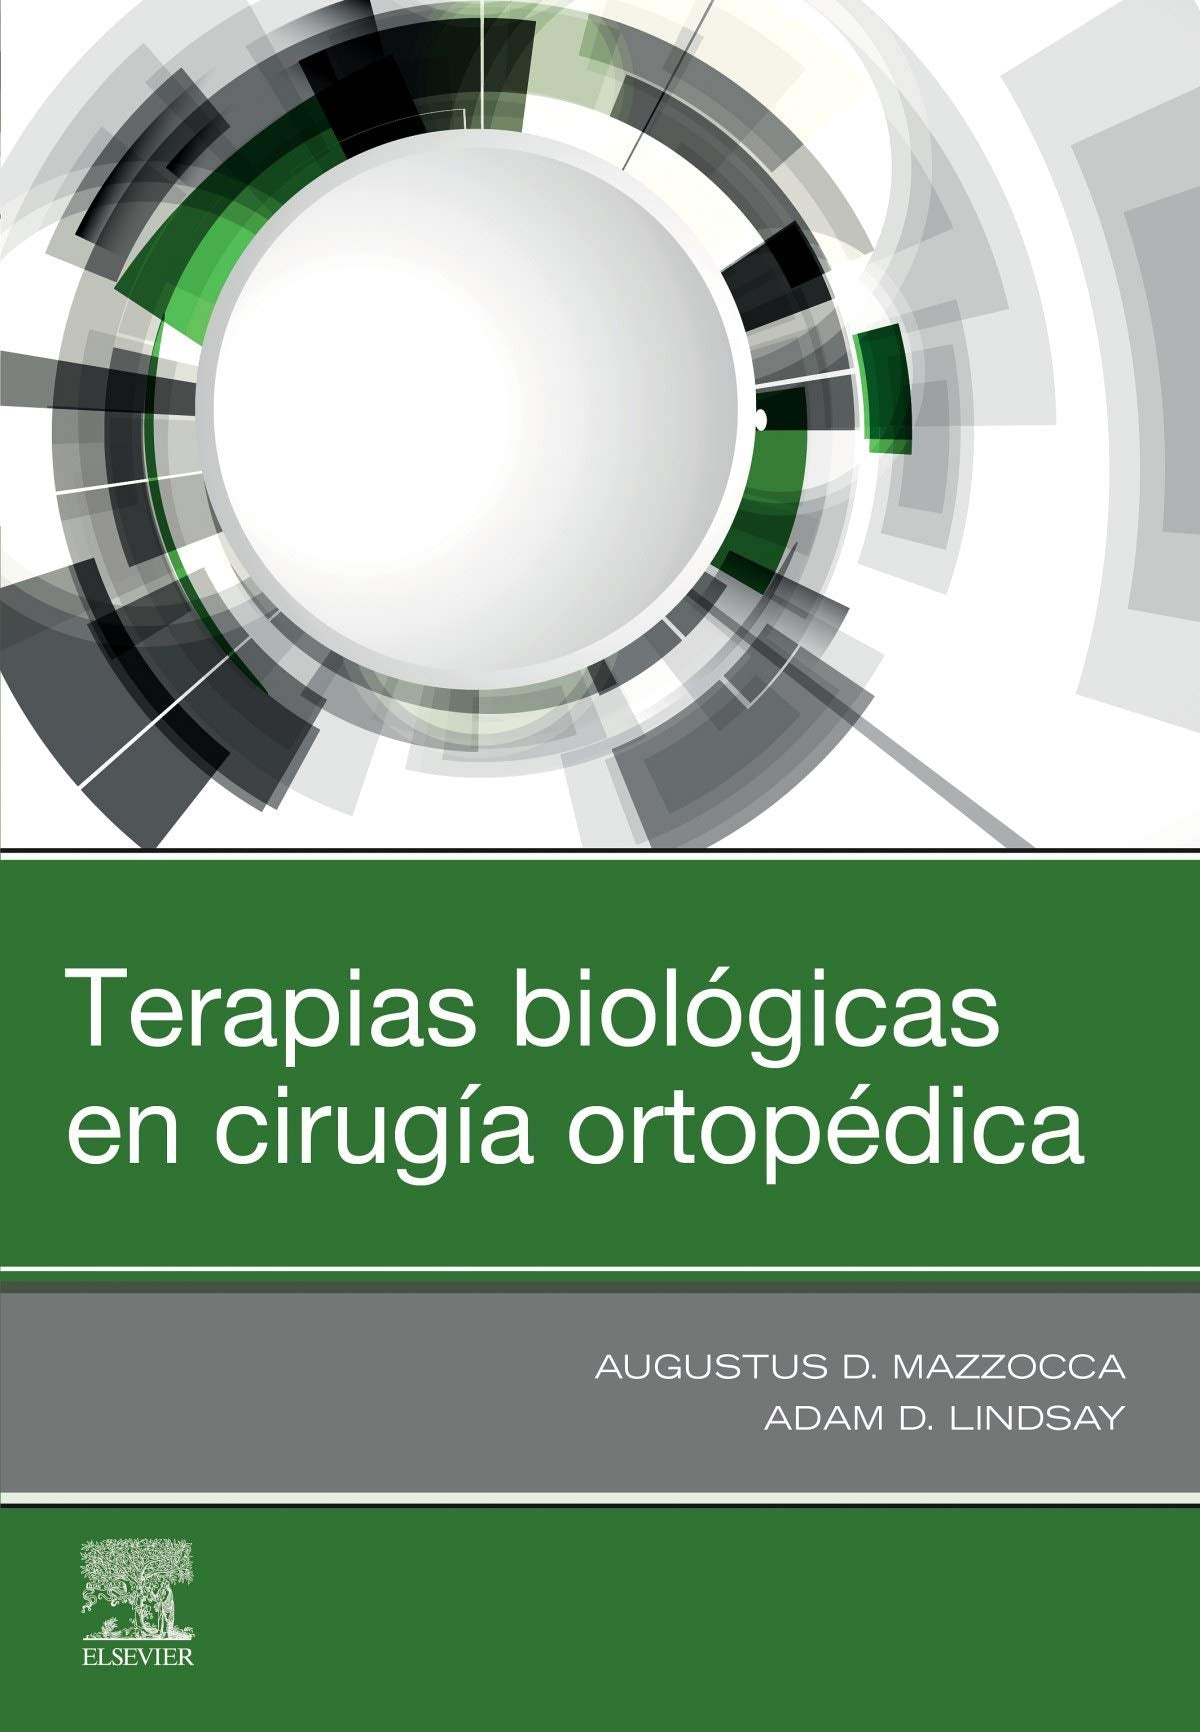 MAZZOCCA, A. D., TERAPIAS BIOLÓGICAS EN CIRUGÍA ORTOPÉDICA © 2020